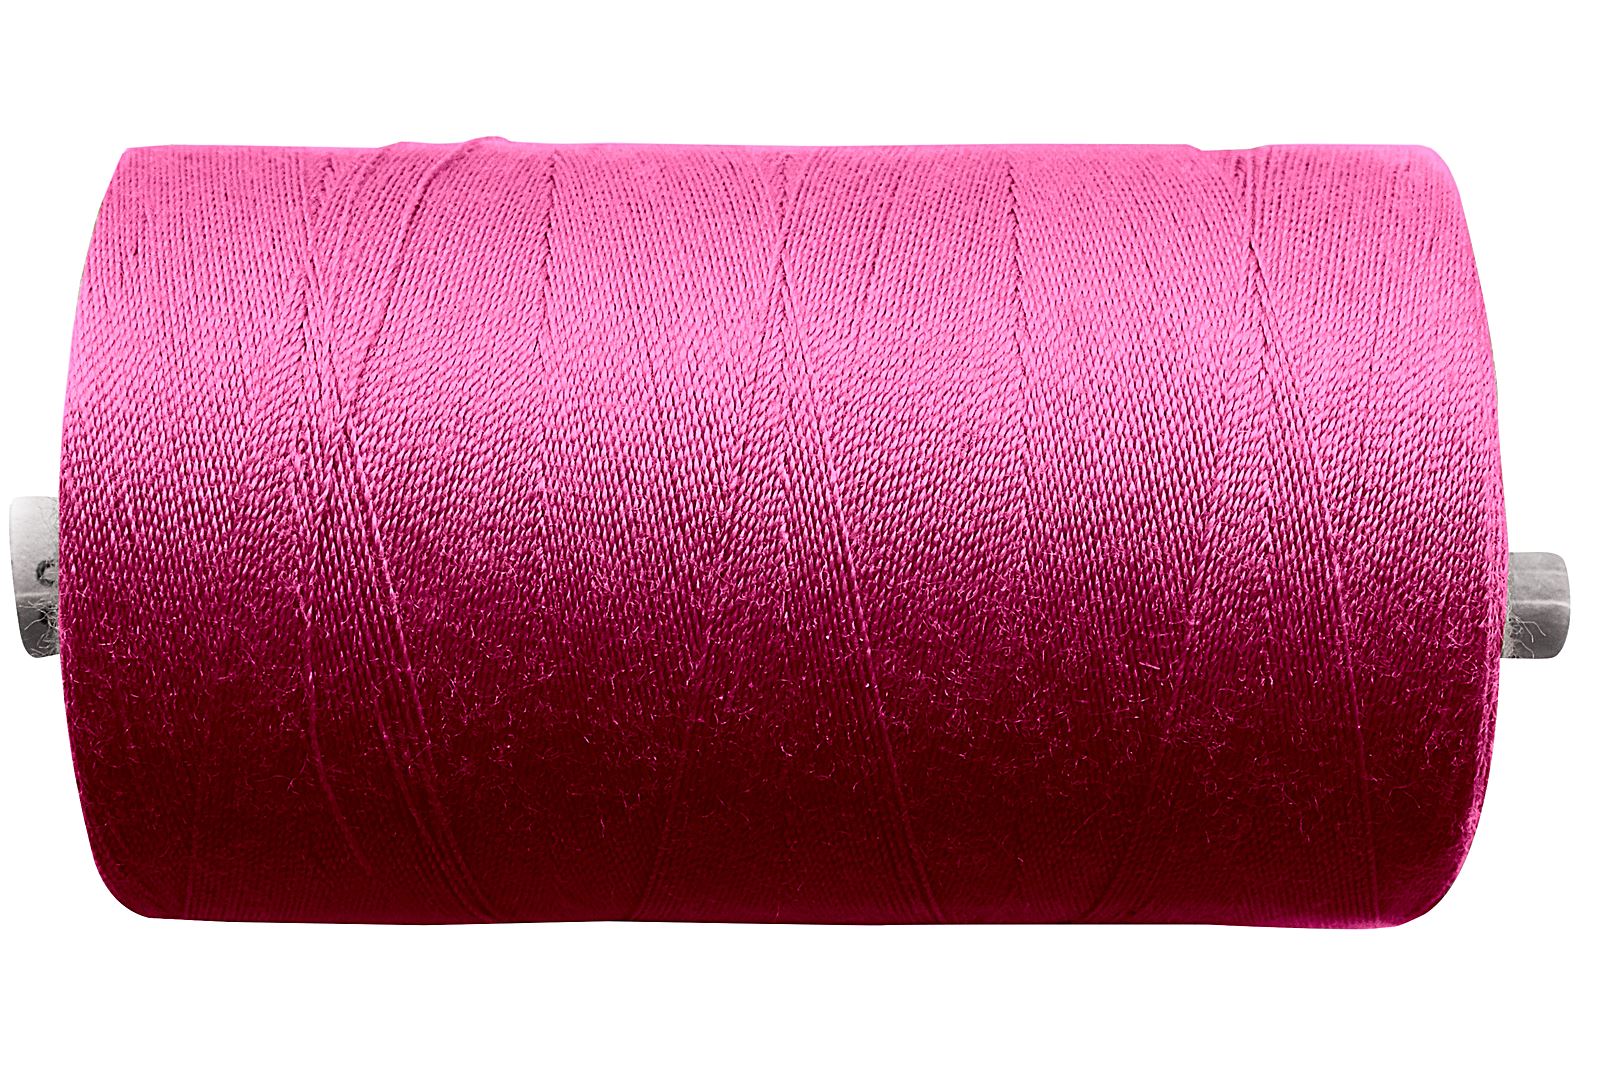 Linha de costura – Qualidade industrial 100 - Rosa forte